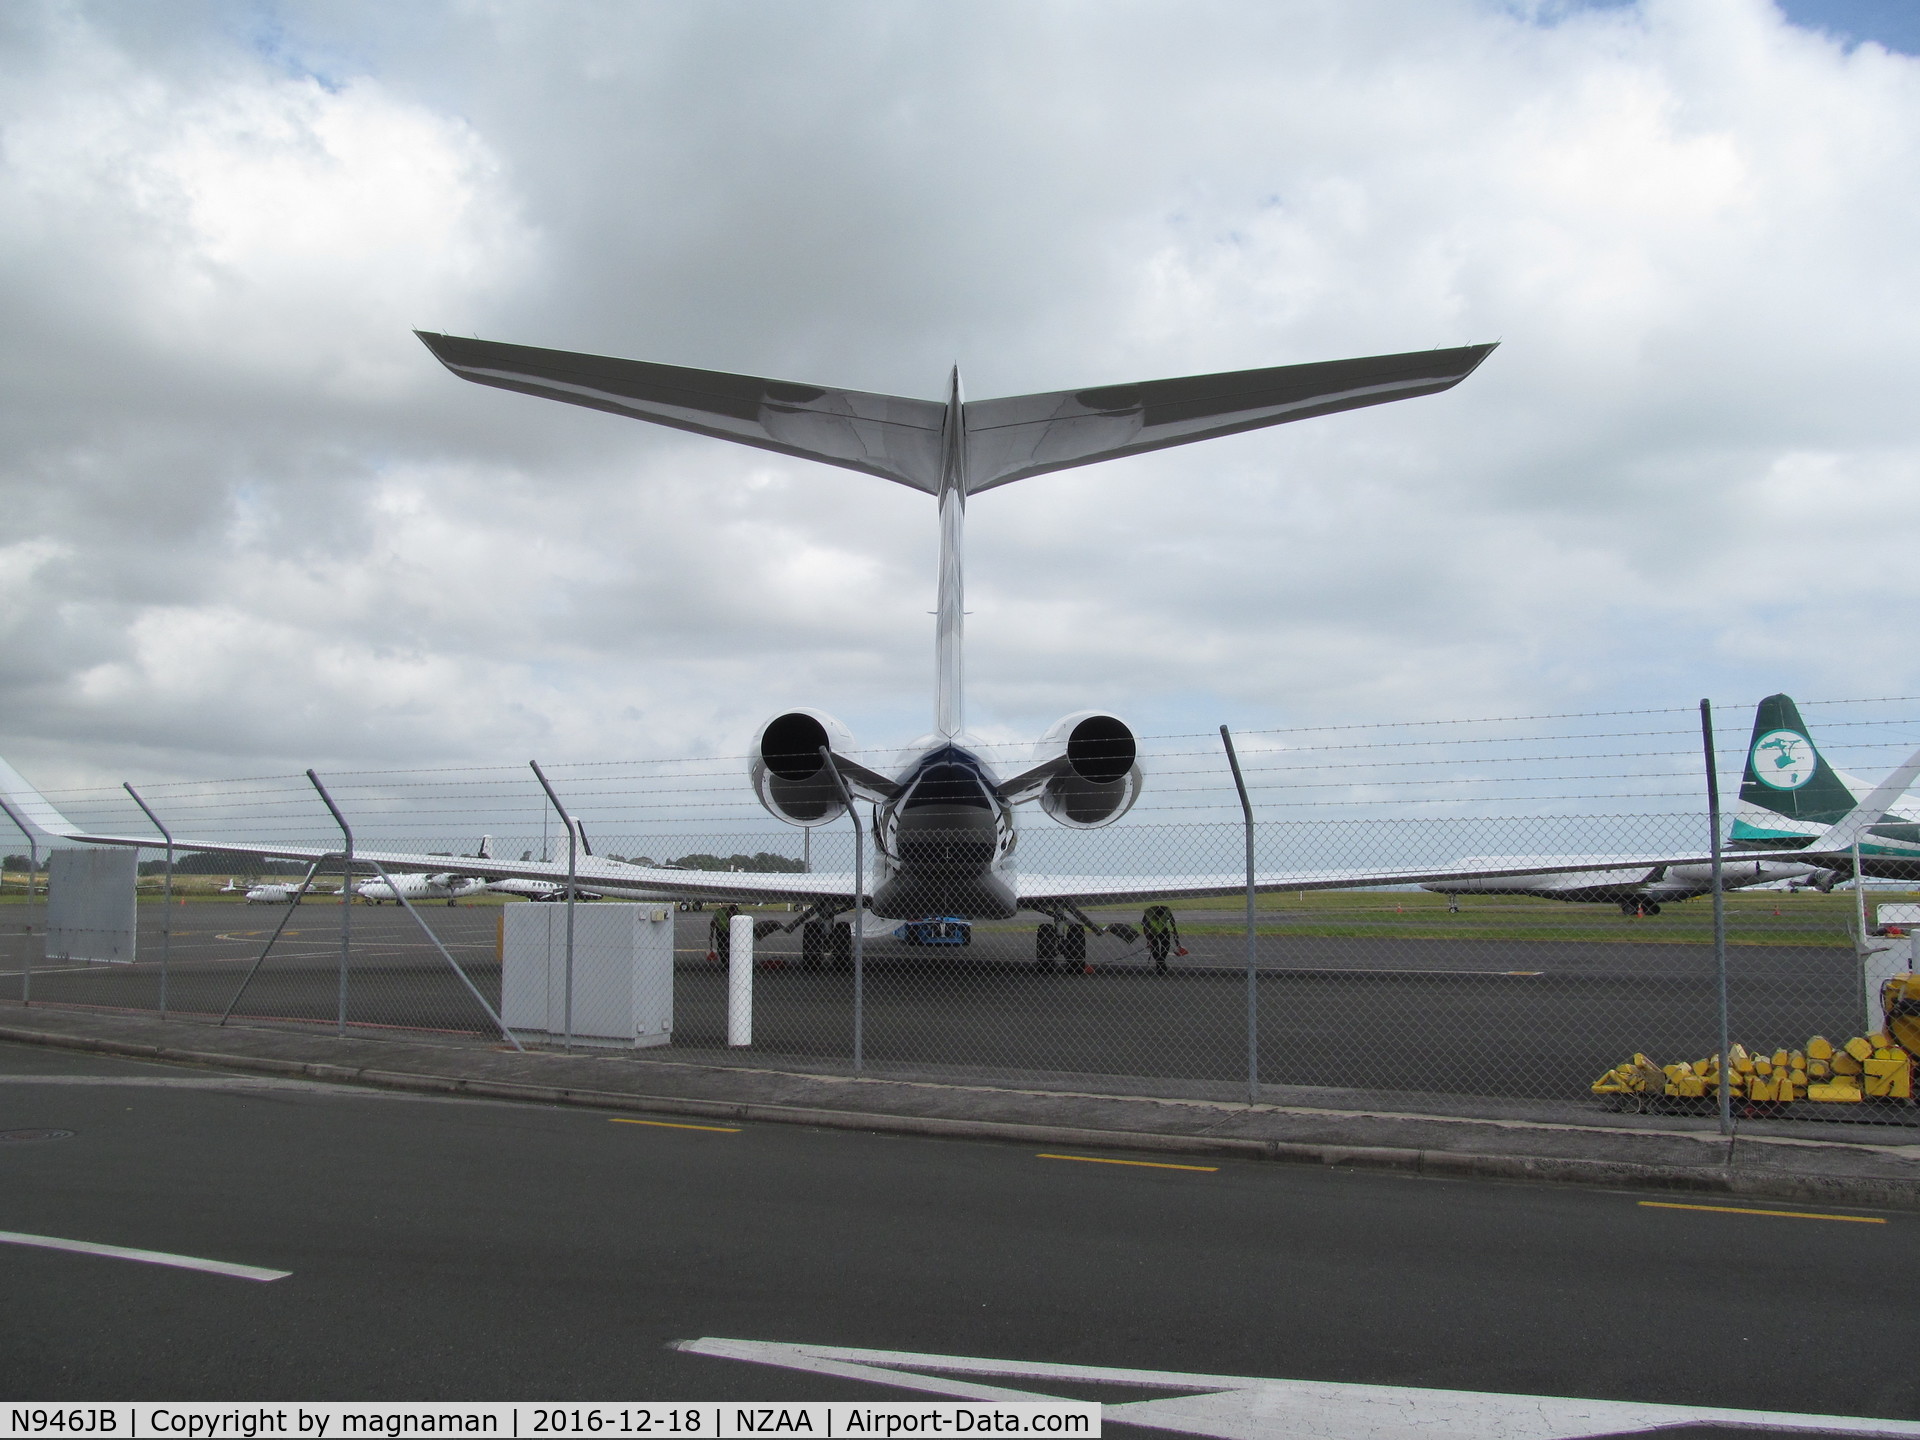 N946JB, 2015 Gulfstream Aerospace G650 (G-VI) C/N 6157, rear rend on